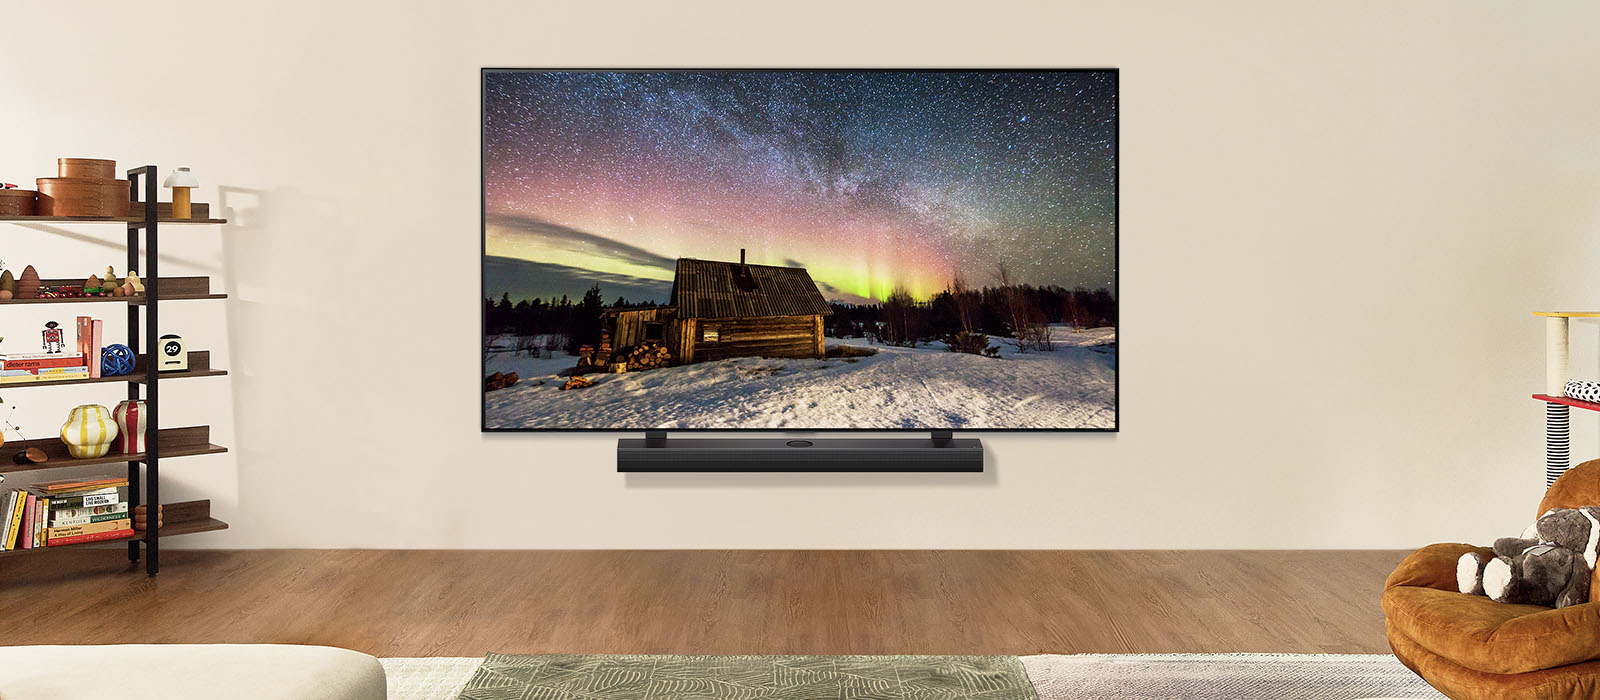 LG teler ja LG ribakõlar päevasel ajal tänapäevases eluruumis. Virmalistega ekraanipilt kuvatakse ideaalsete heledustasemetega.